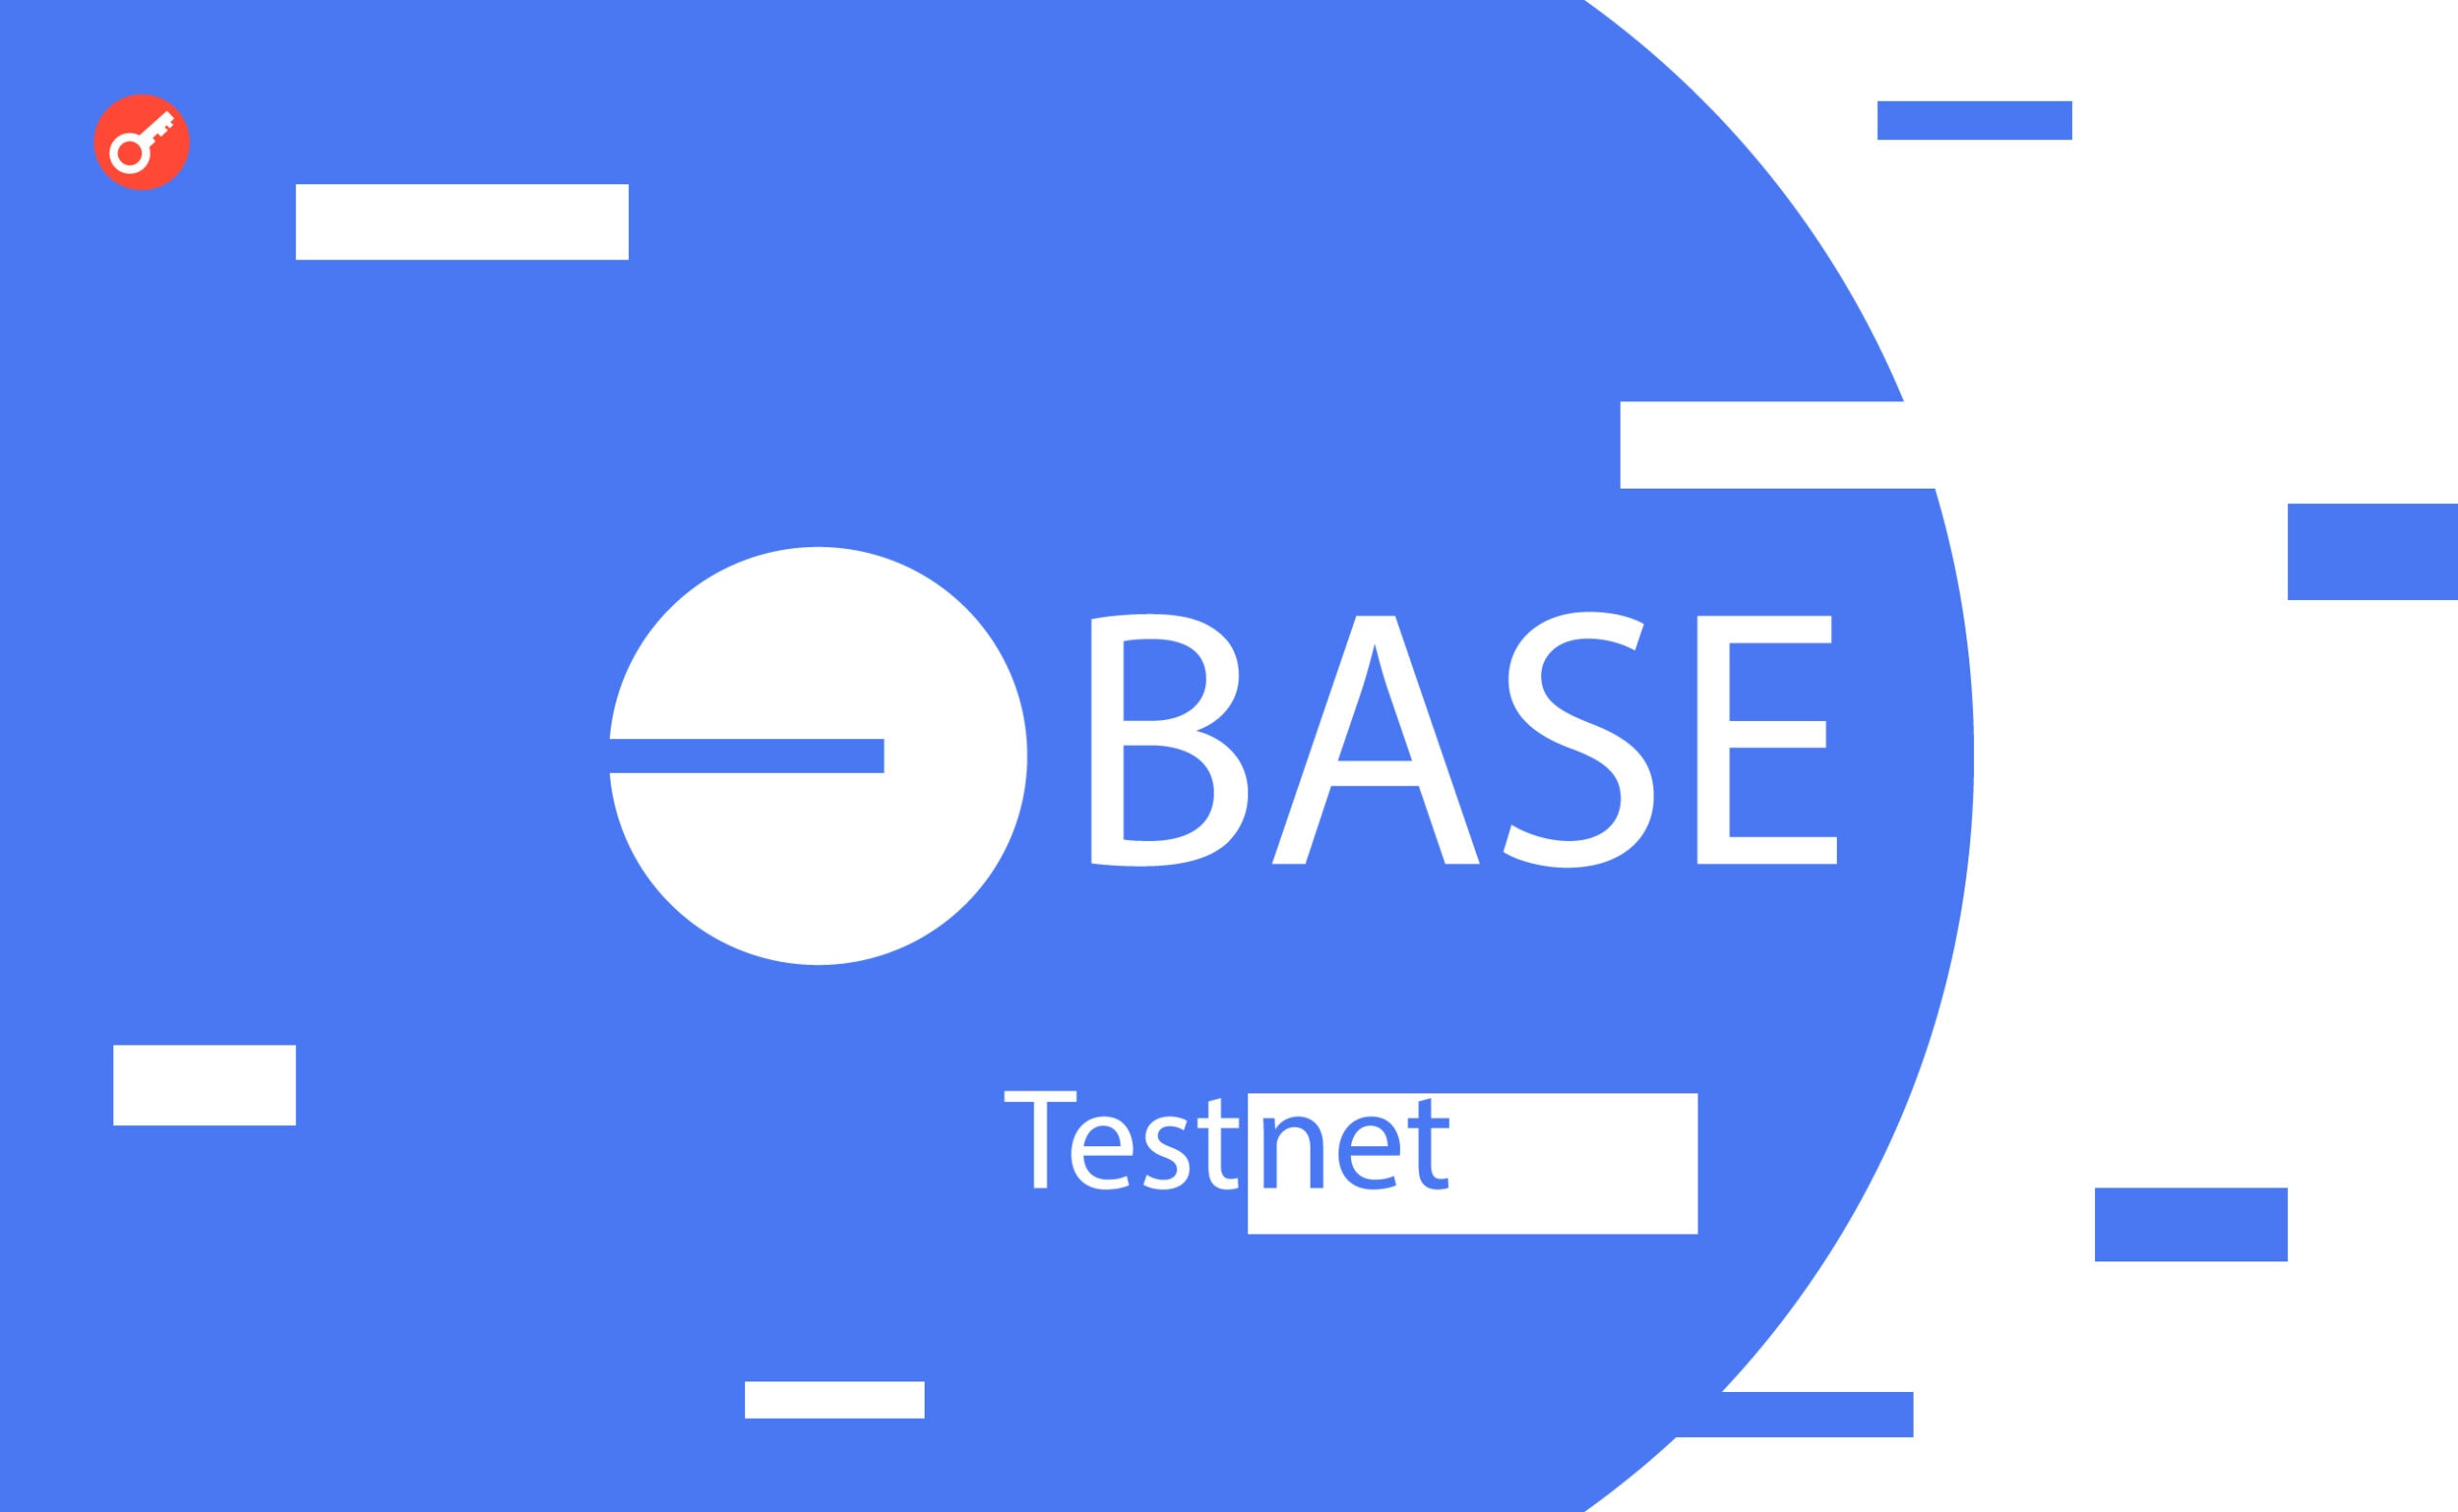 Base тестнет: інструкція з проходження тестнету. Головний колаж статті.